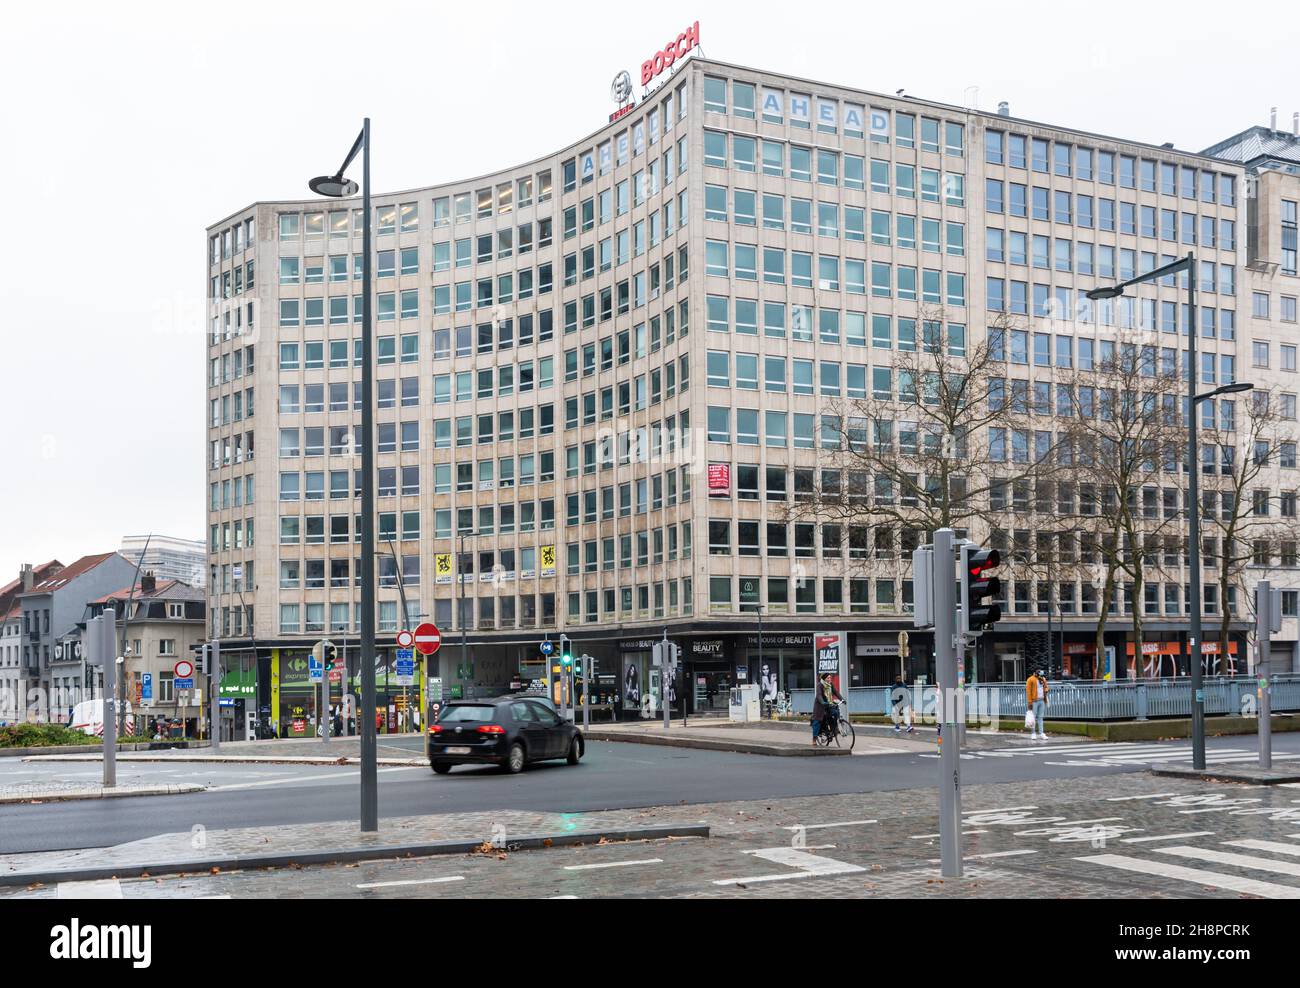 Saint-Josse, Regione capitale di Bruxelles, Belgio- 11 26 2021: Piazza Madou con la costruzione del partito politico di destra di Vlaams Belang Foto Stock